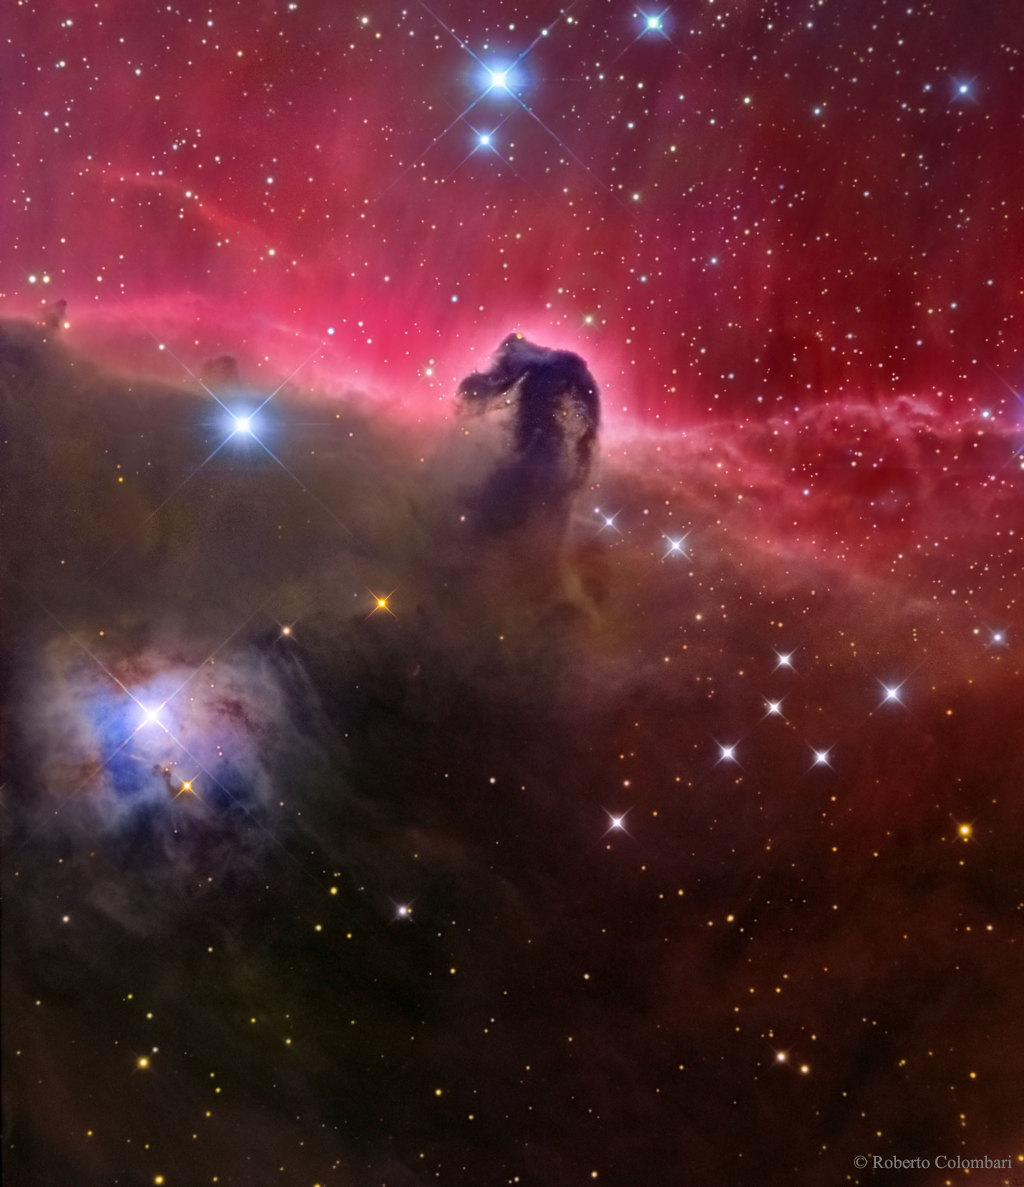 华丽的马头星云,是猎户座分子云团的一部分,距离我们约1500光年.